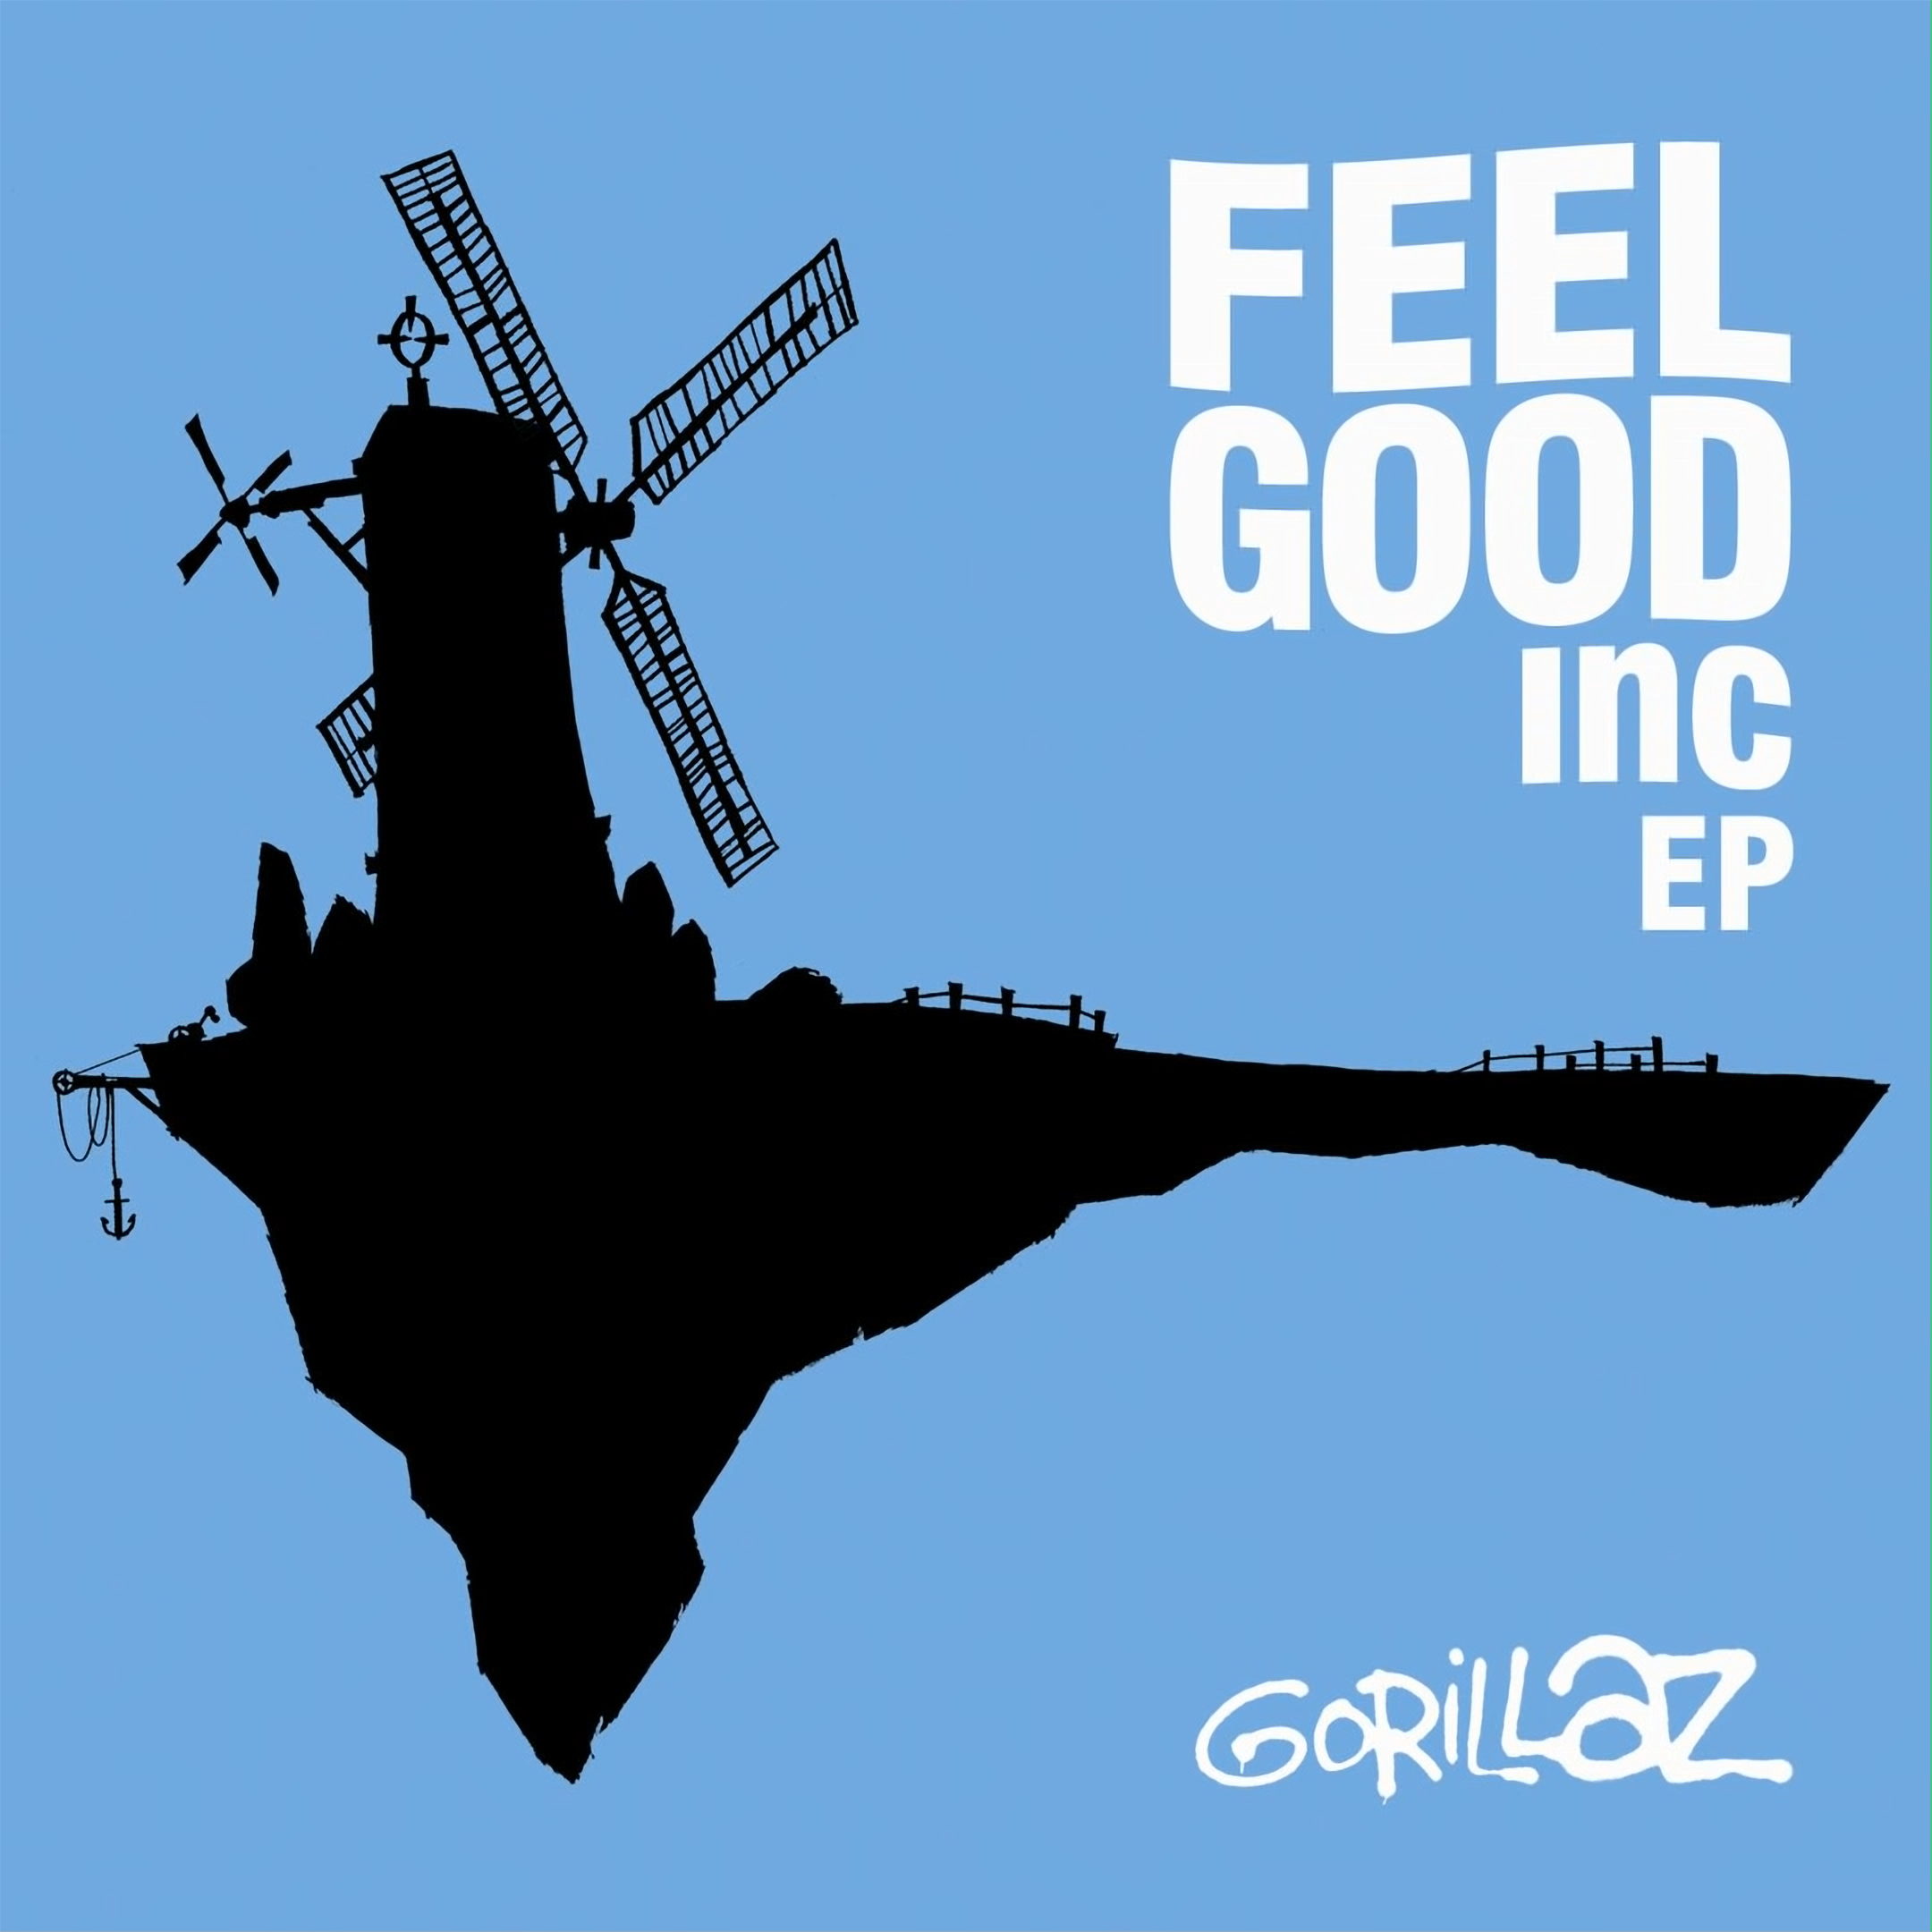 Feel good mixed. Feel good Inc. Gorillaz feel good Inc. Feel good Inc обложка. Gorillaz feel good Inc обложка.